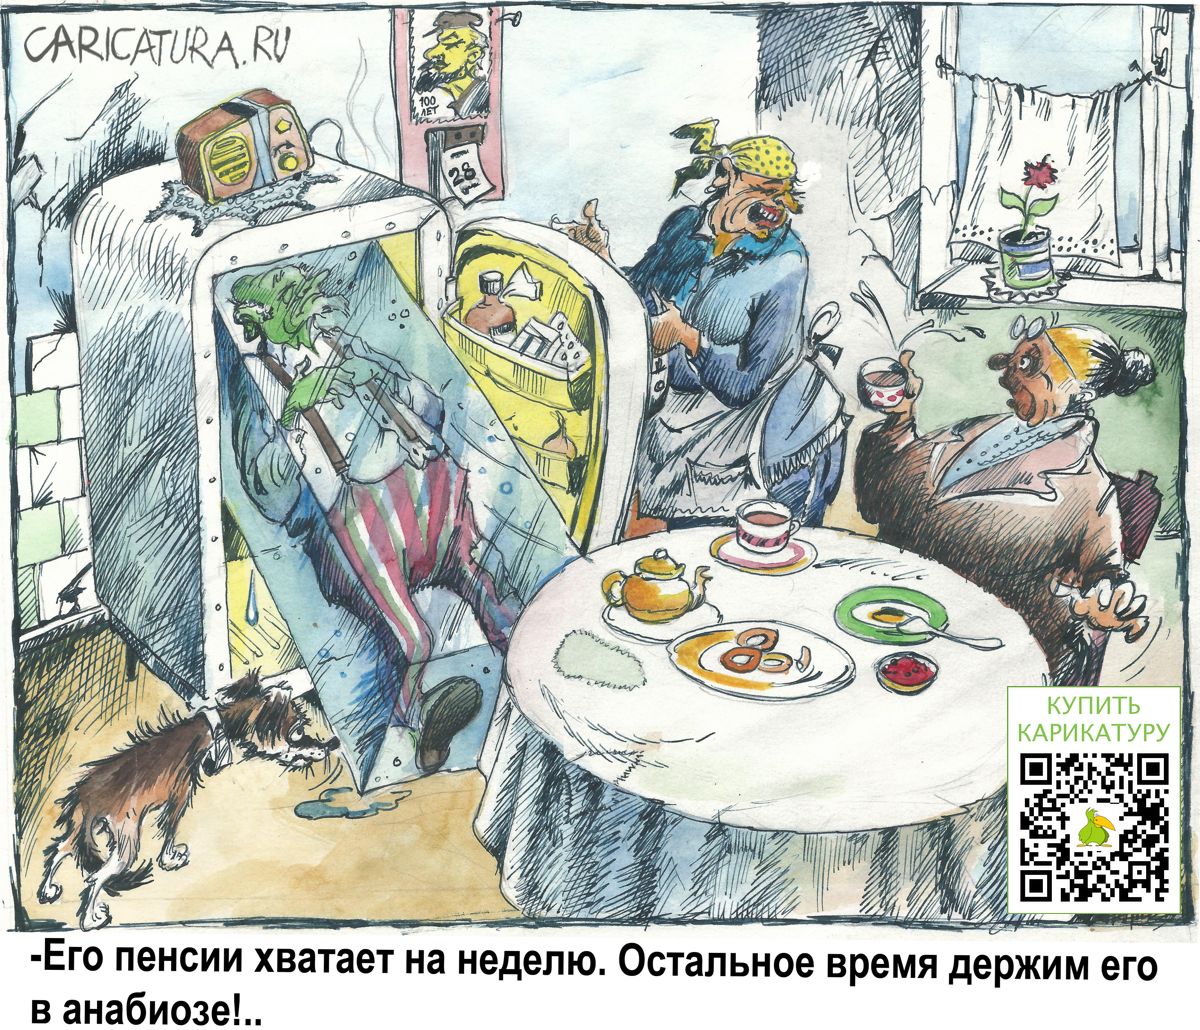 Карикатура "Анабиоз", Александр Шульпинов